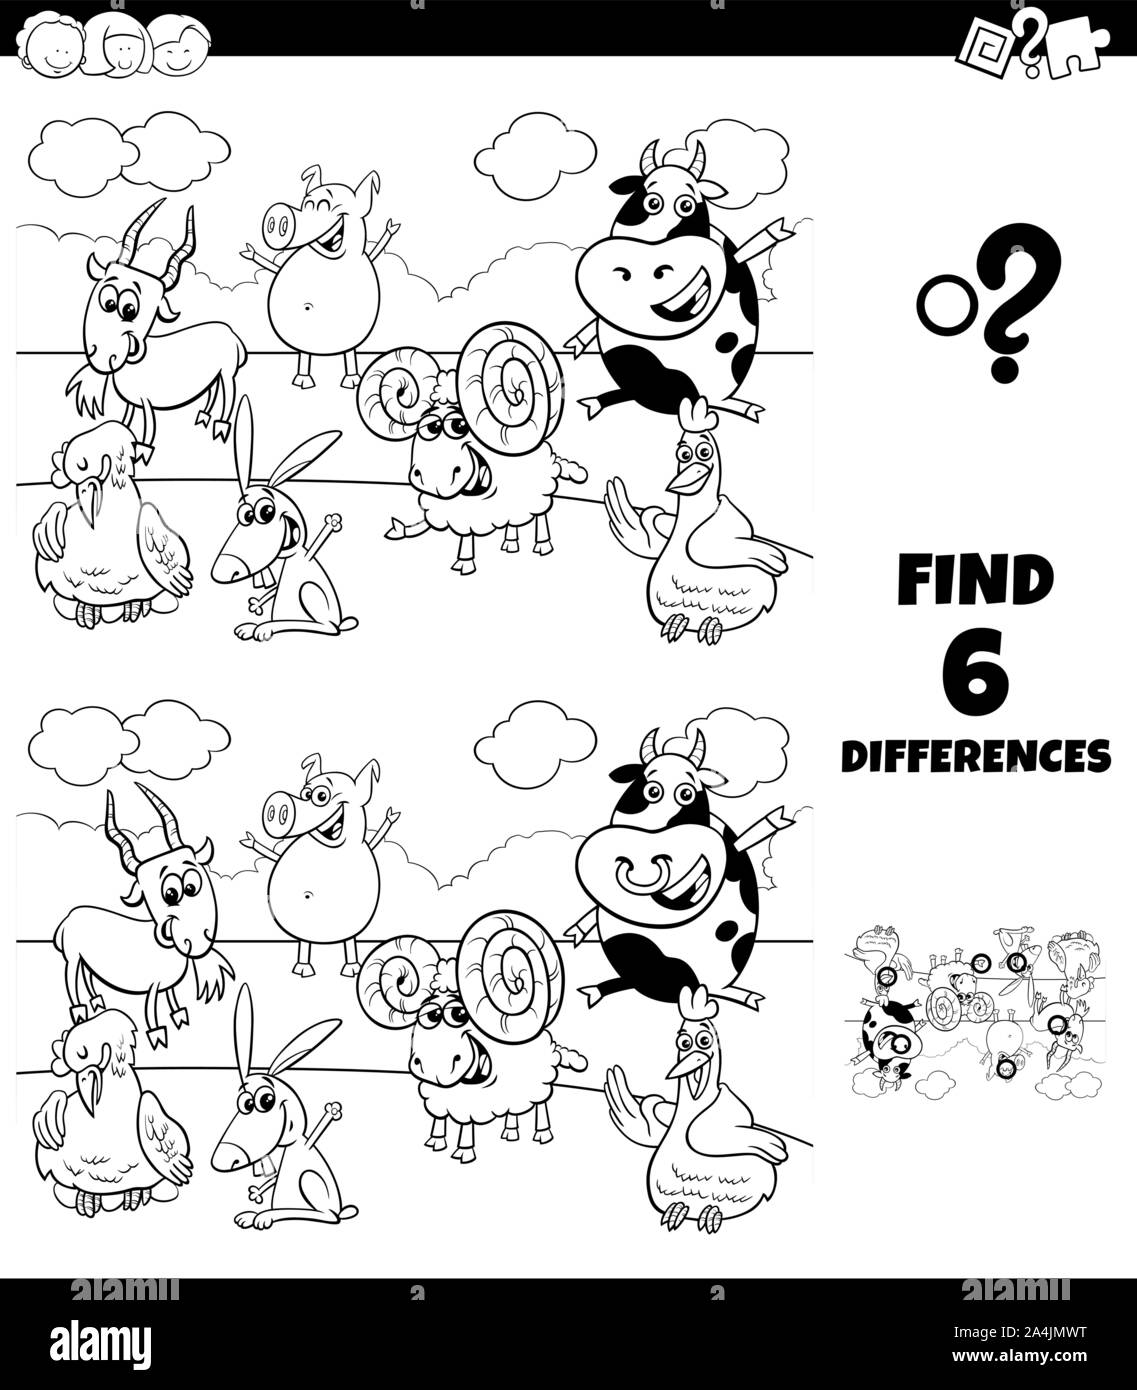 Illustration Cartoon noir et blanc de trouver les différences entre les images jeu éducatif pour enfants avec des animaux de ferme coloriage personnages drôles Illustration de Vecteur